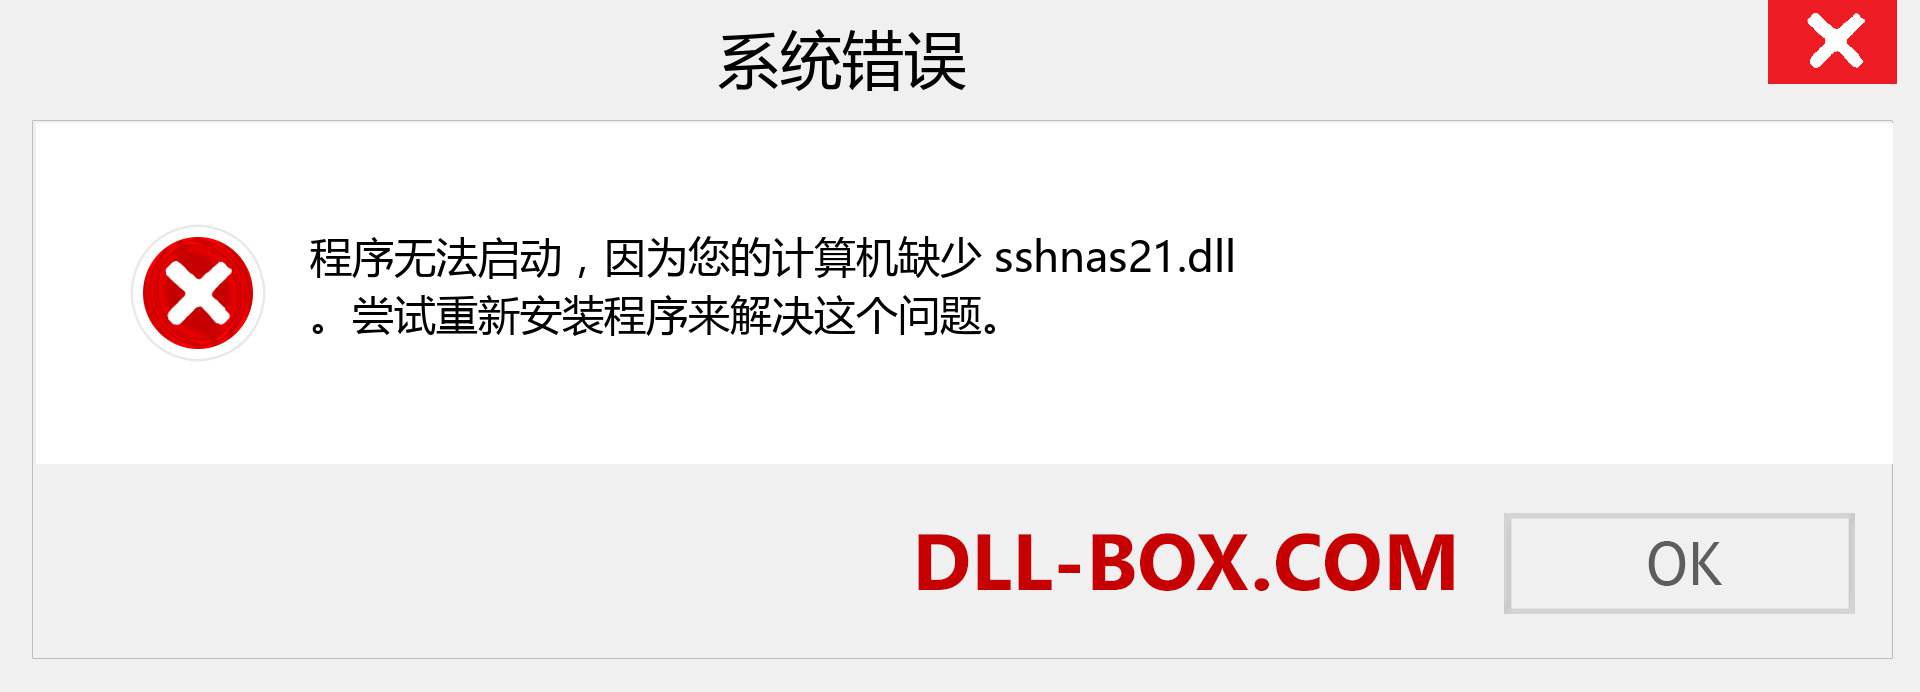 sshnas21.dll 文件丢失？。 适用于 Windows 7、8、10 的下载 - 修复 Windows、照片、图像上的 sshnas21 dll 丢失错误